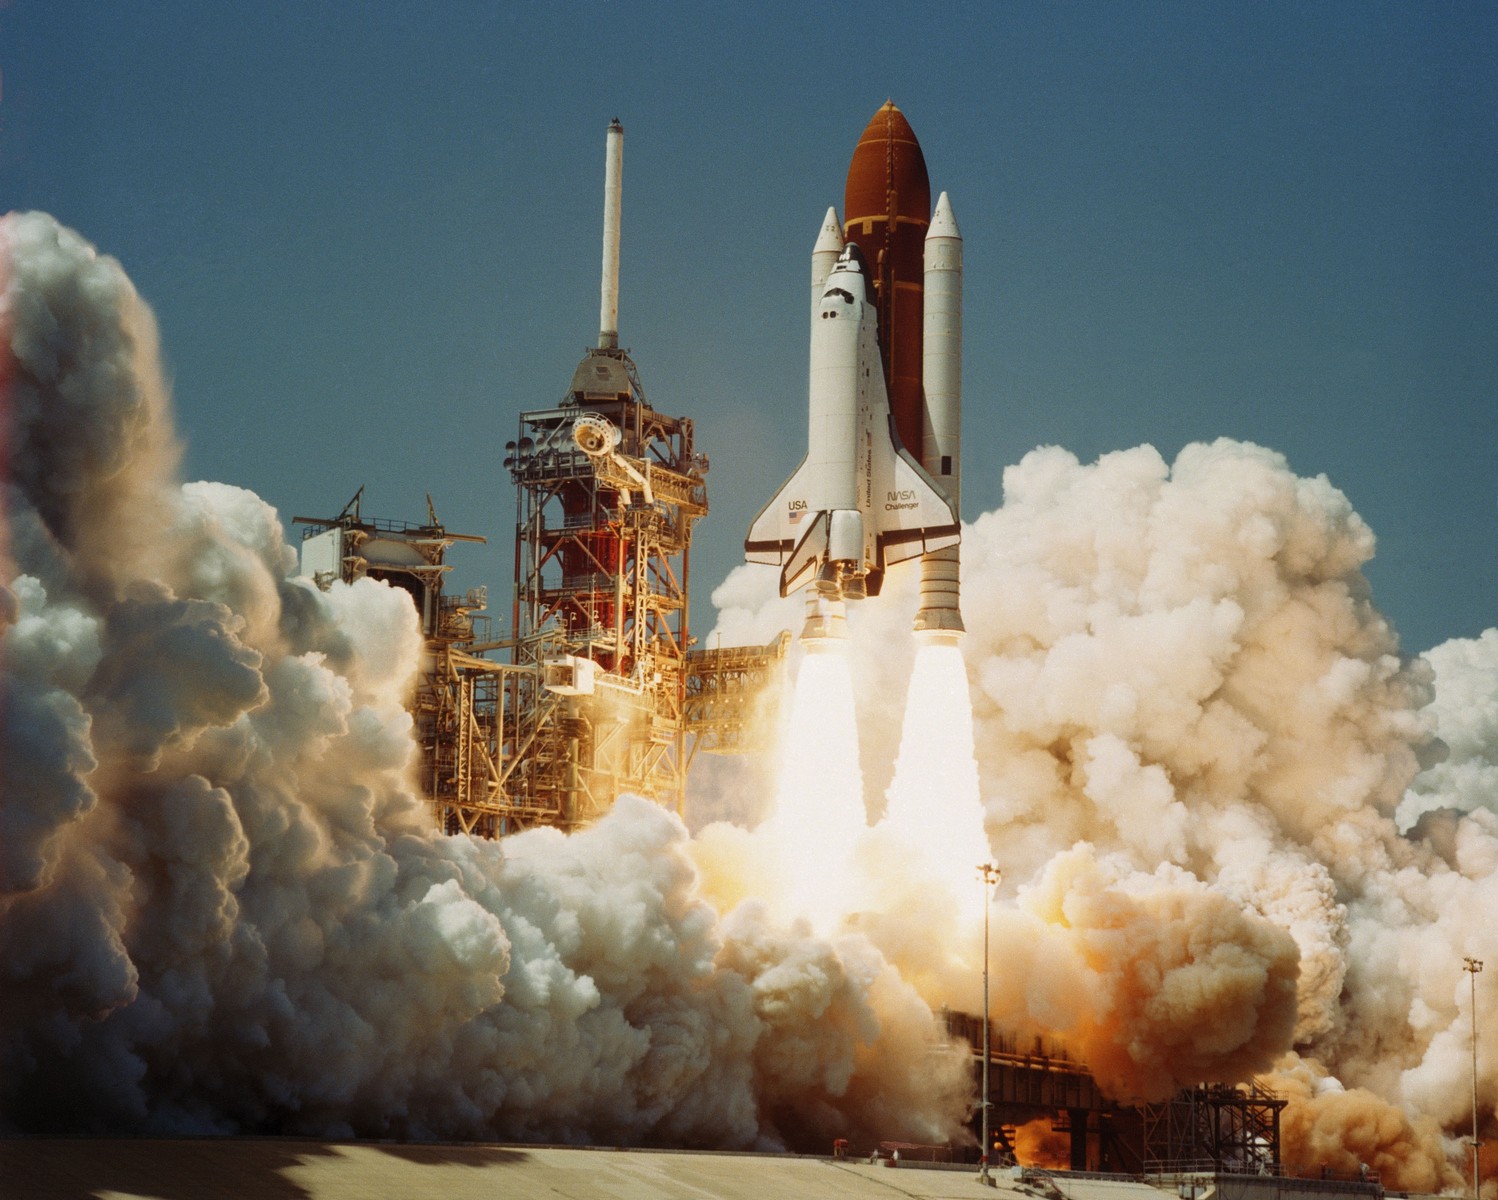 Первый старт космического корабля «Челленджер» 4 апреля 1986 г. – миссия STS-6